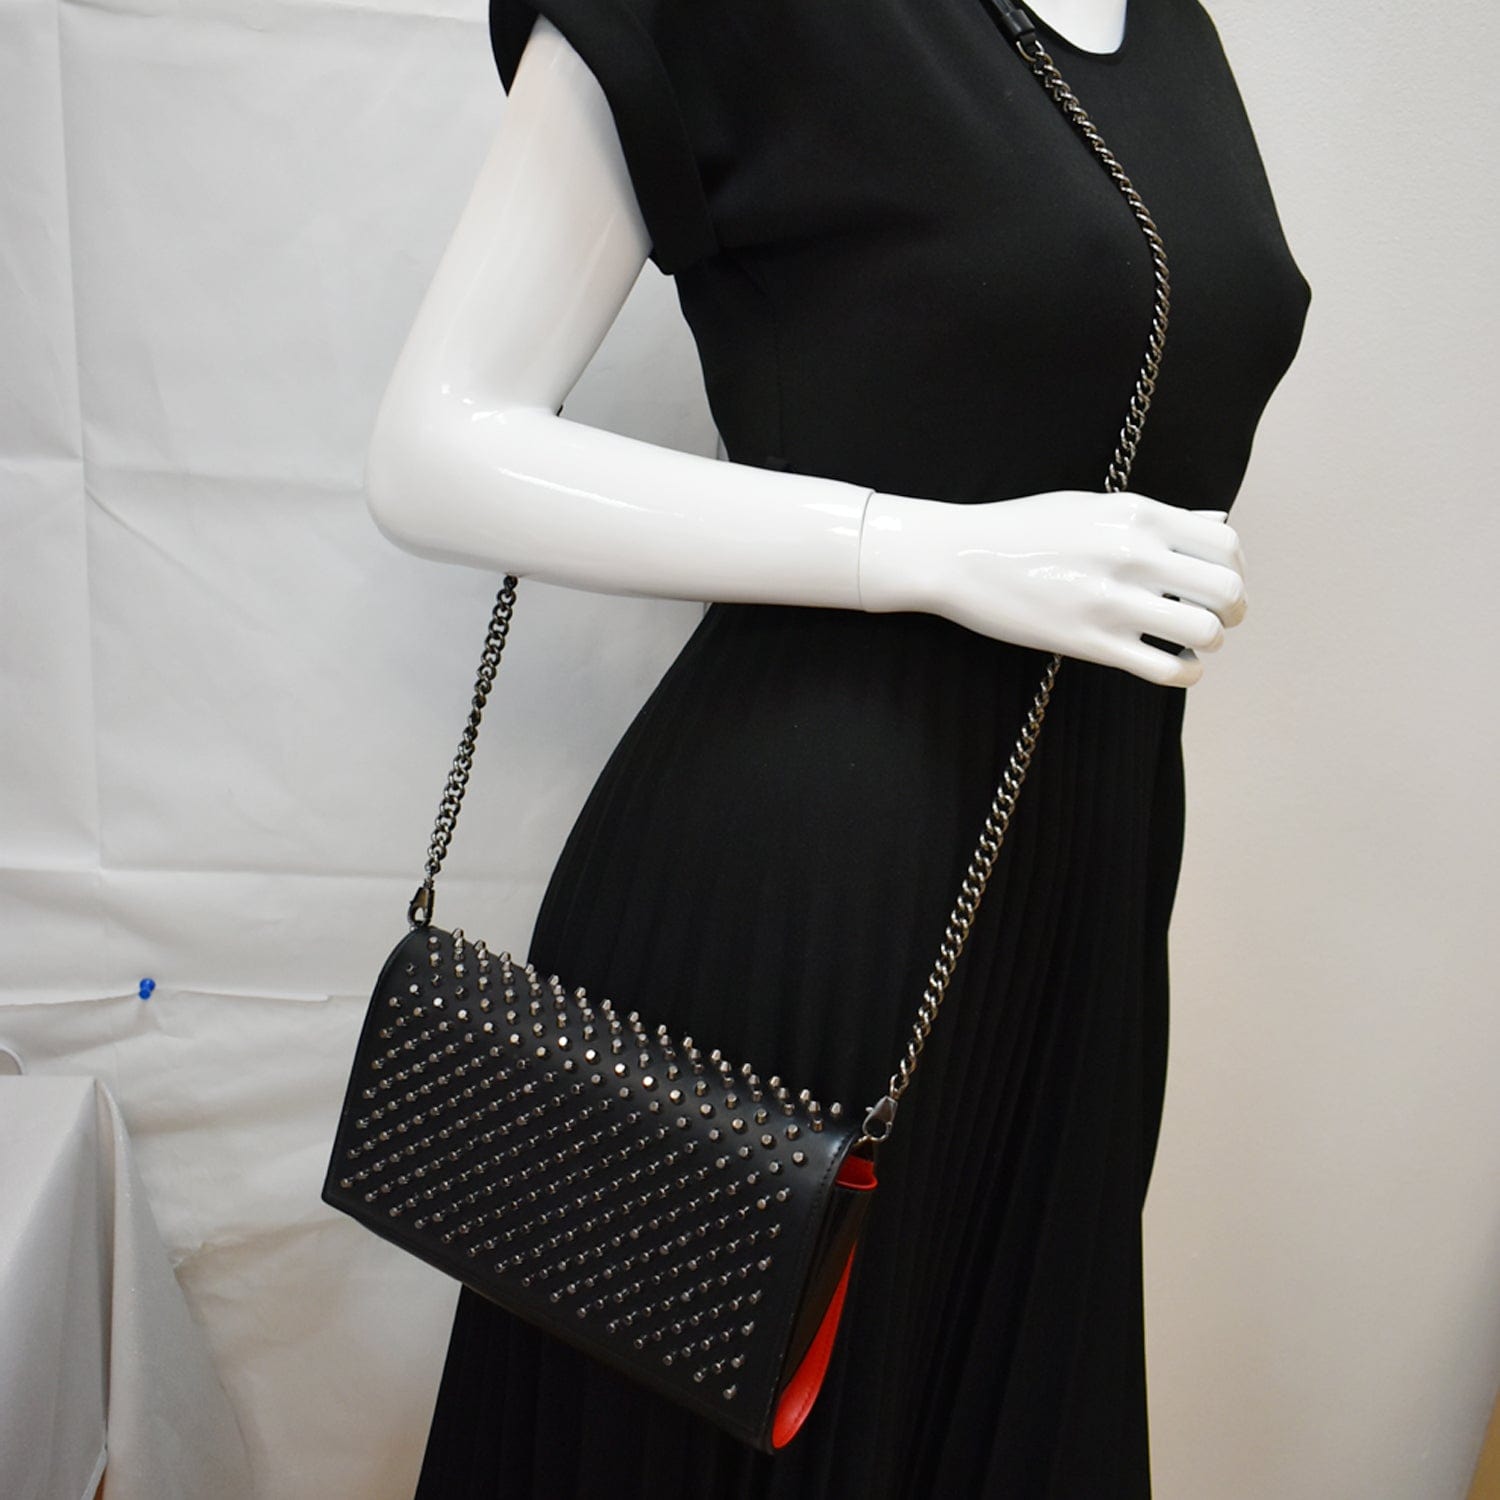 Black Paloma stud-embellished leather clutch bag